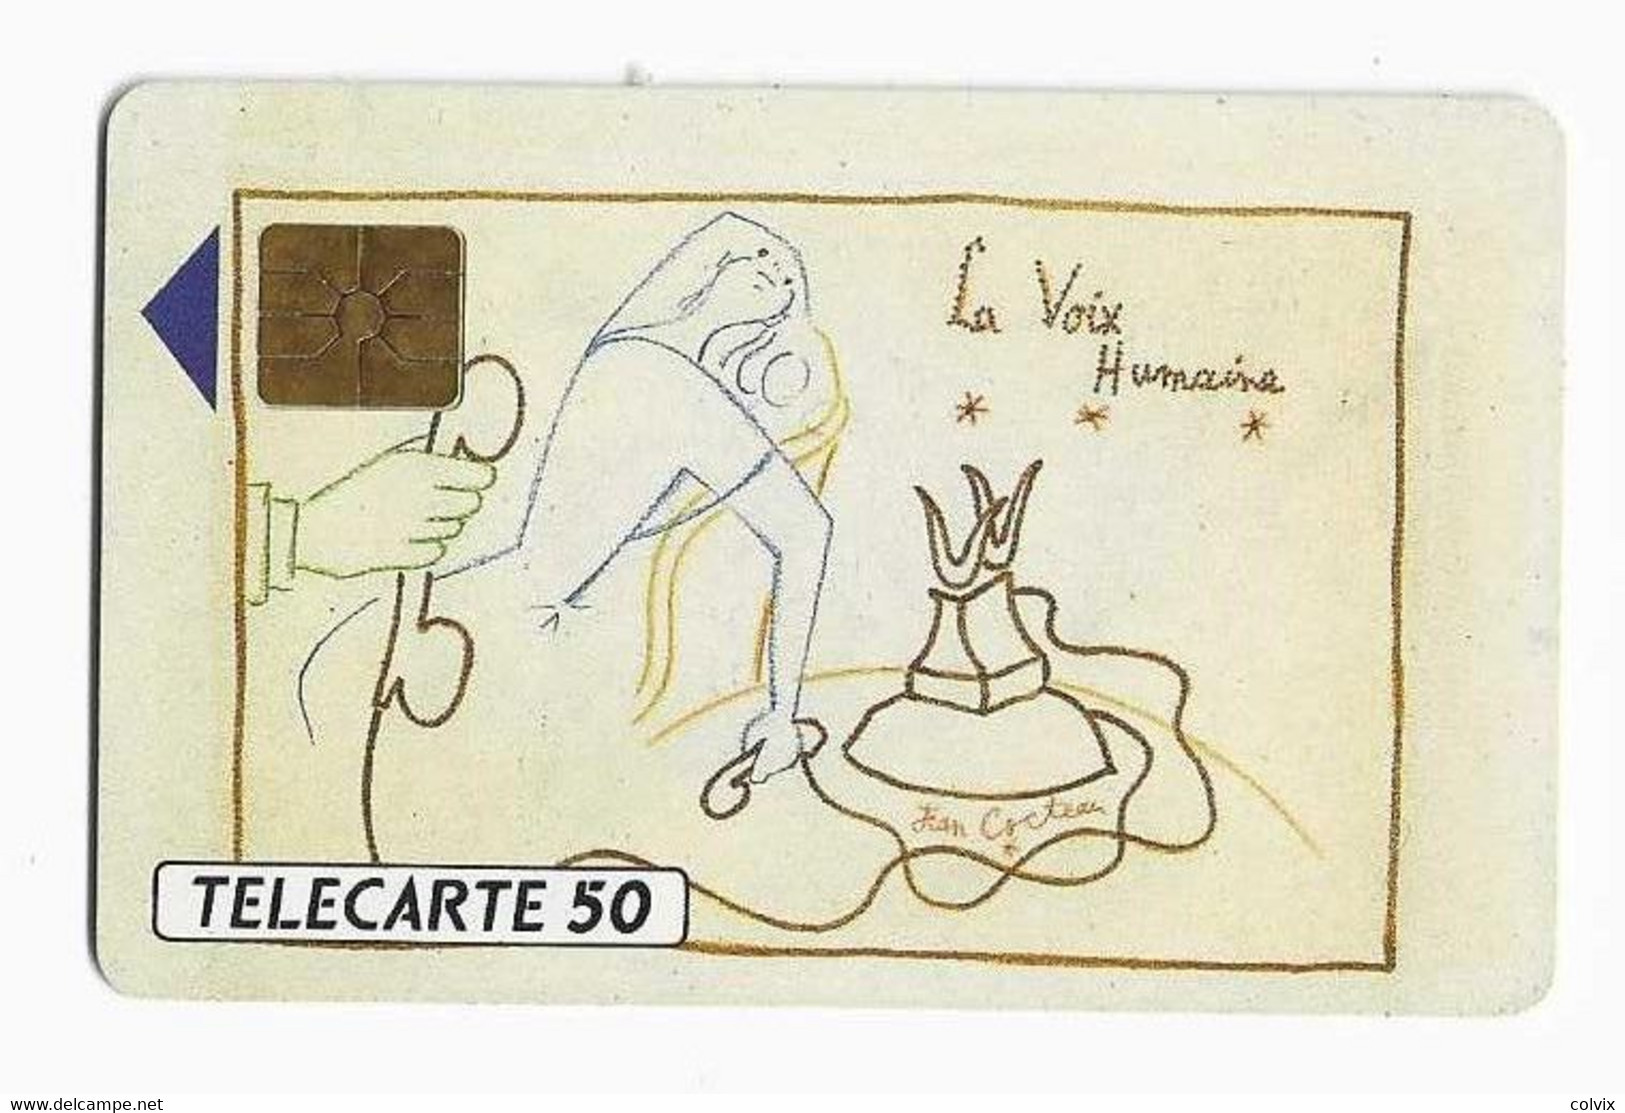 FRANCE TELECARTE D303 JEAN COCTEAU LA VOIX HUMAINE ROTARY MILLY LA FORET 50U 1000 Ex ANNEE 1990 NEUVE SANS BLISTER - Painting